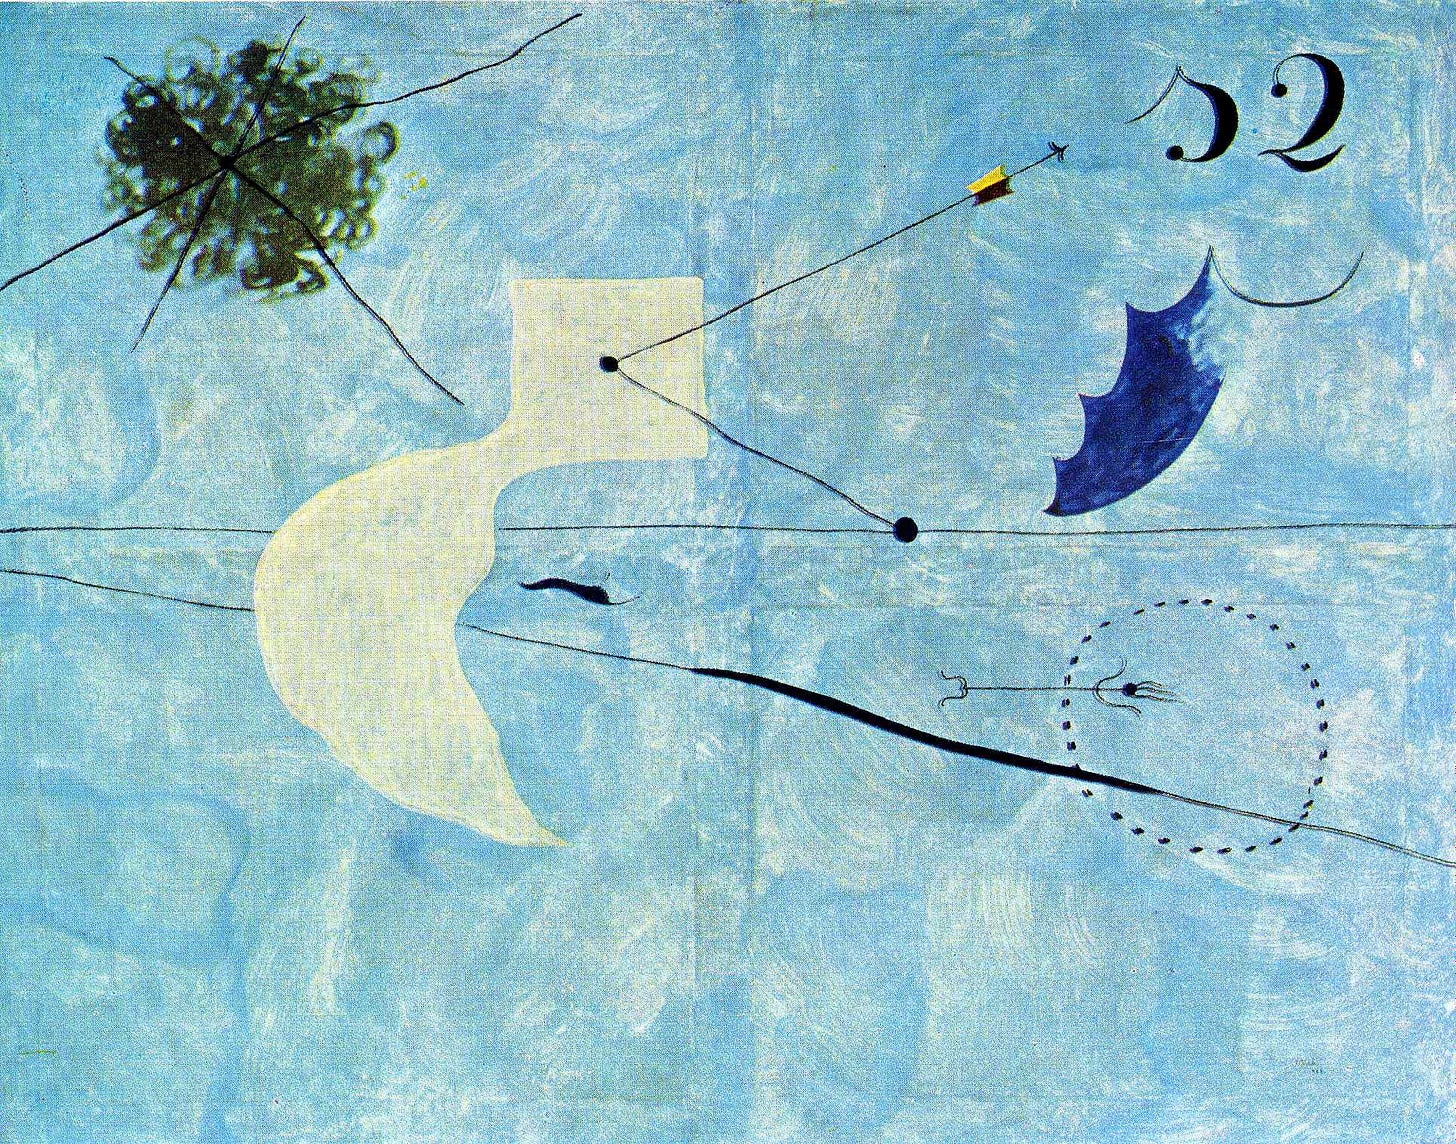 Joan Miro's Siesta (1925)